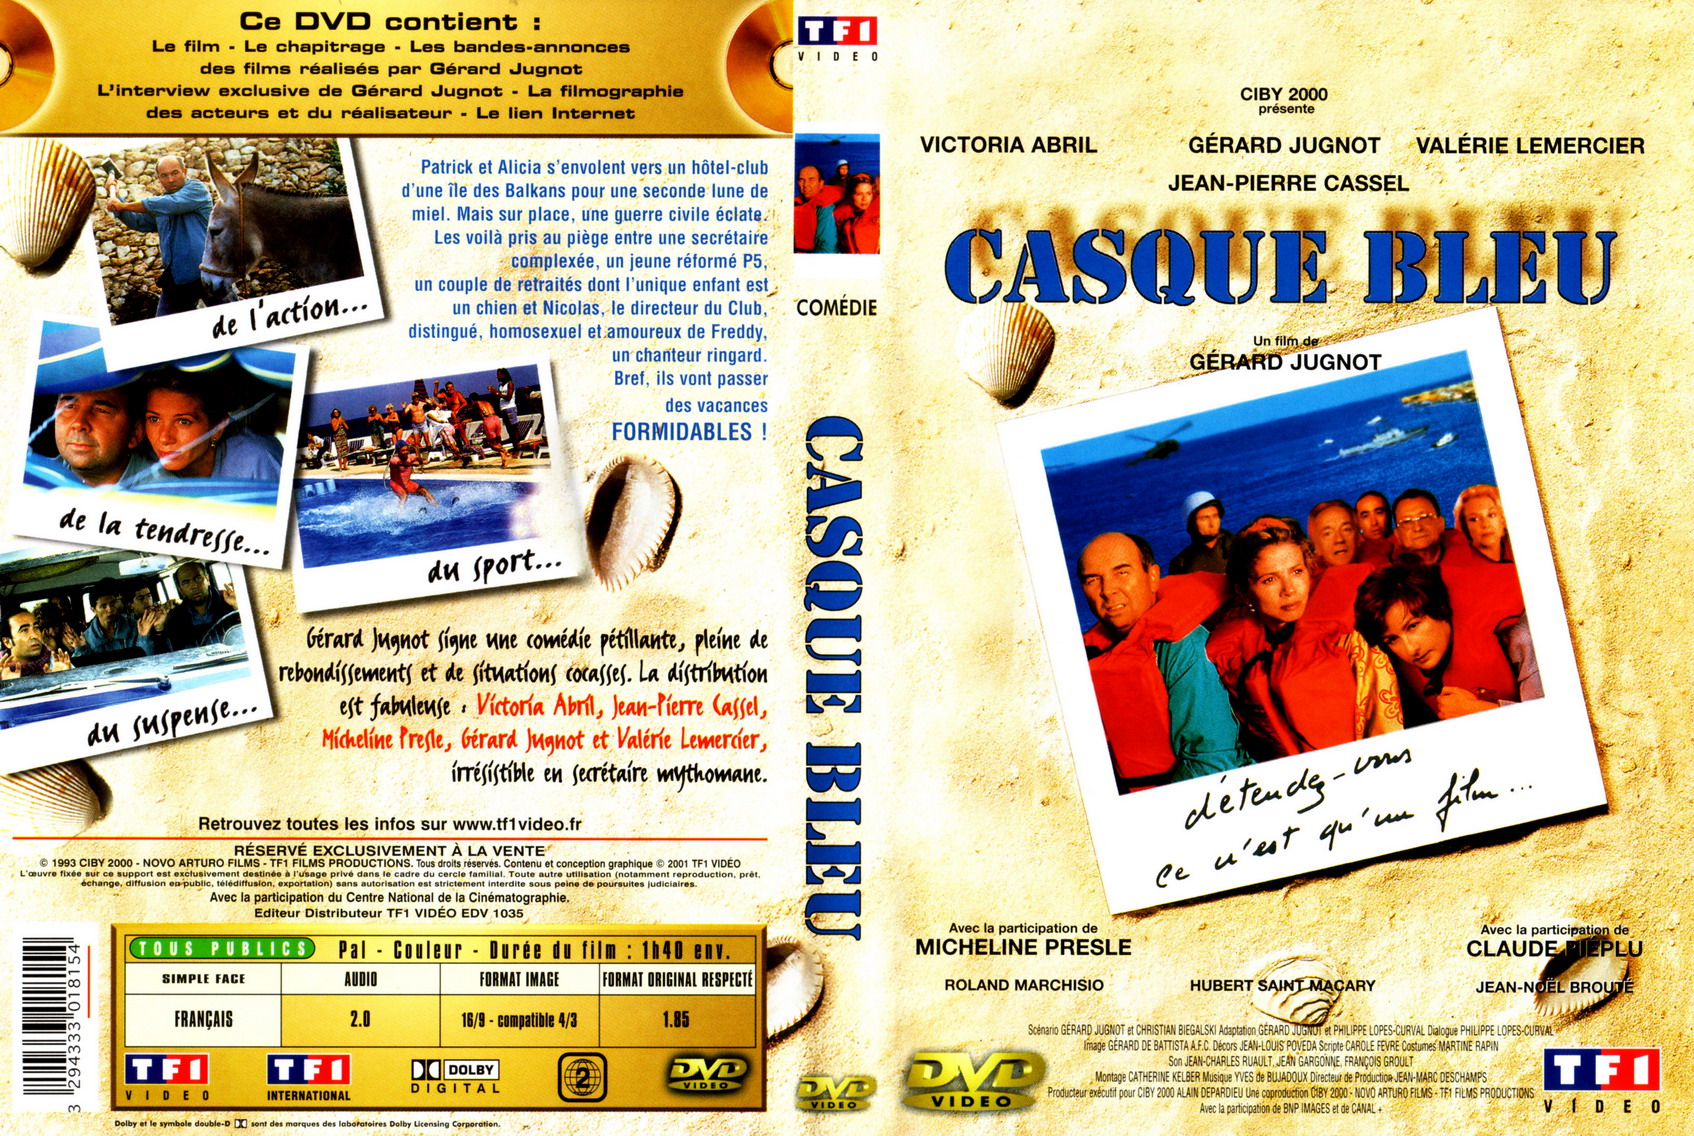 Jaquette DVD Casque bleu